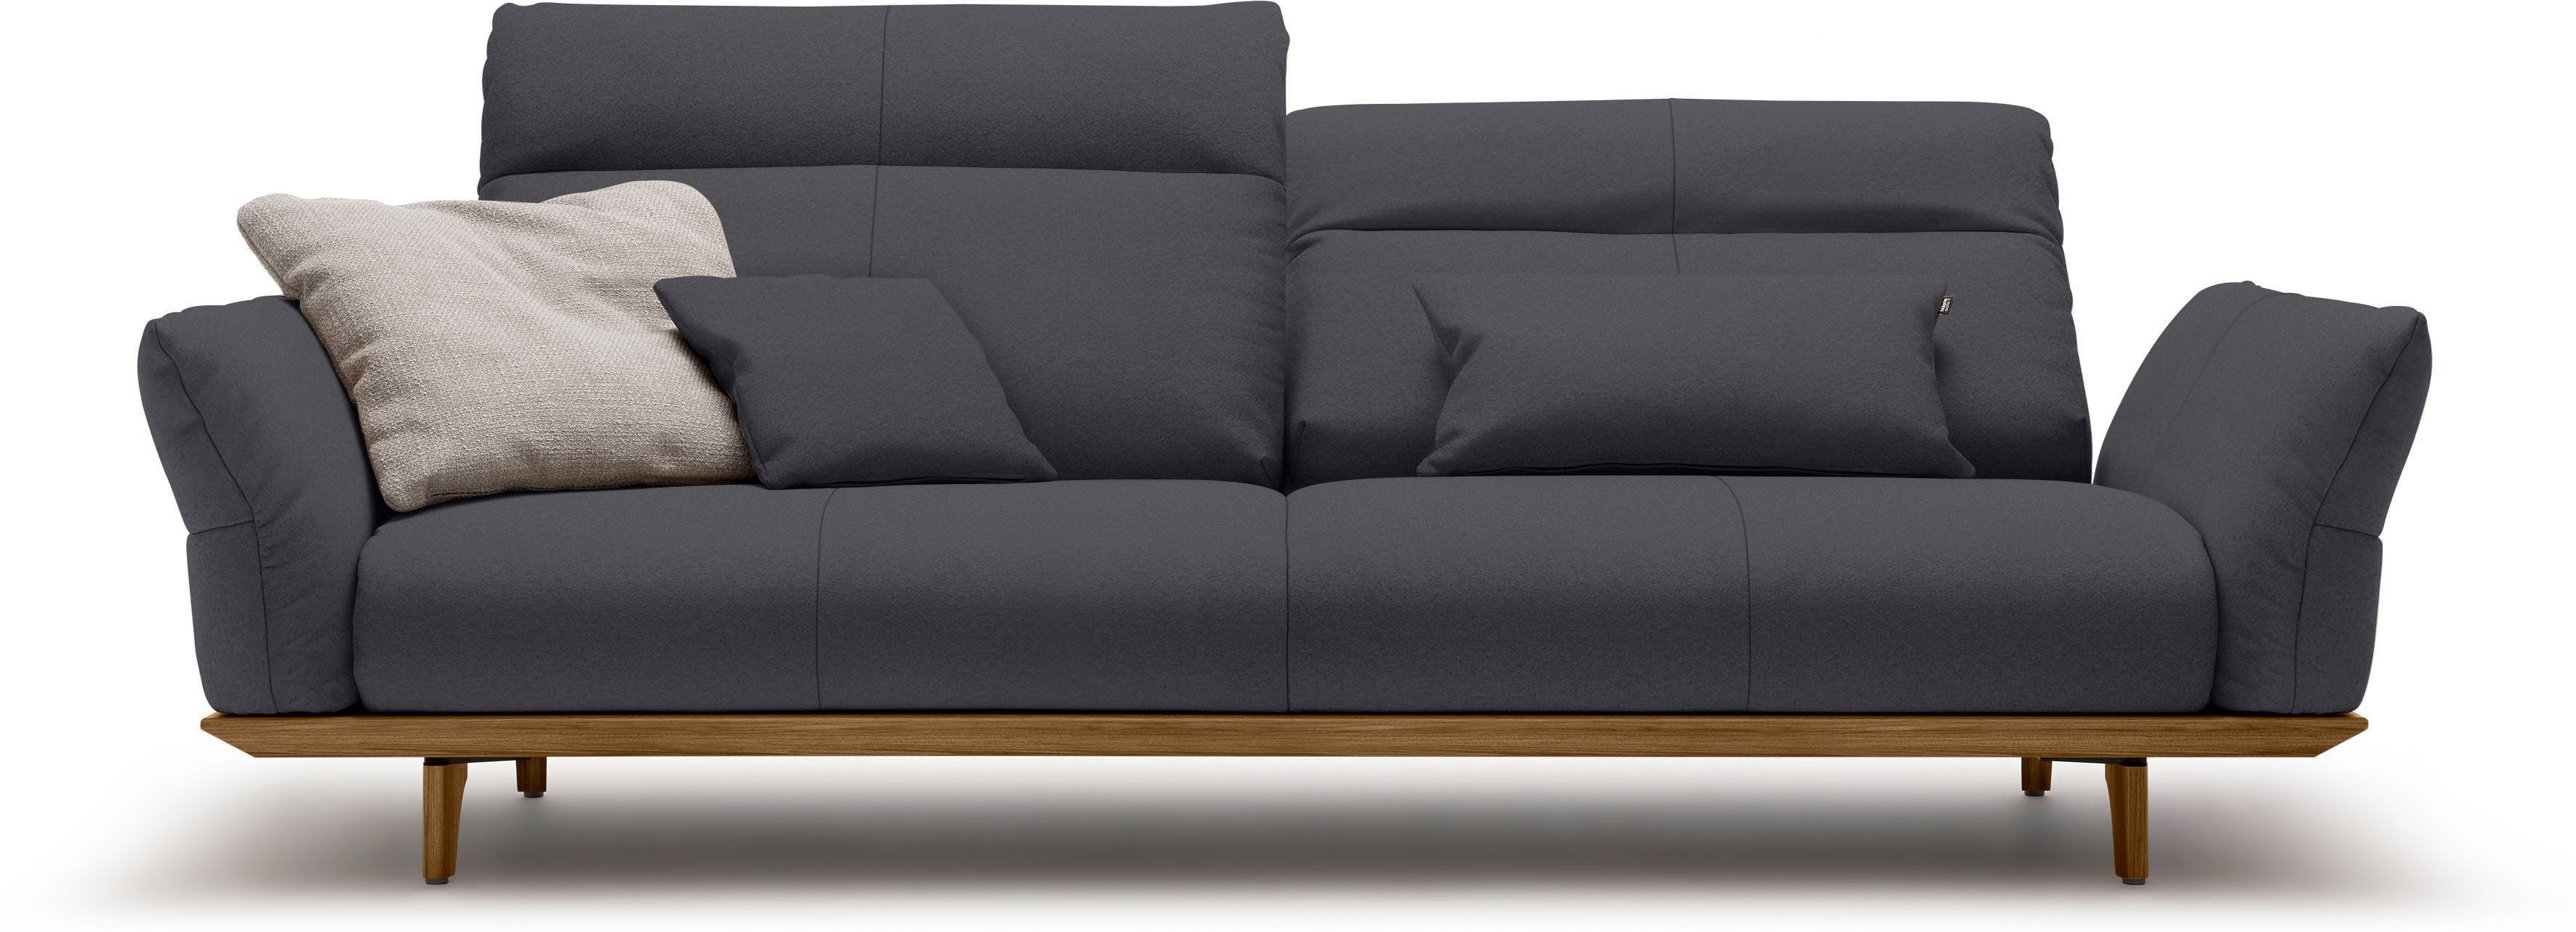 hülsta sofa 3,5-Sitzer Sockel hs.460, in und 228 cm Breite Nussbaum, Füße